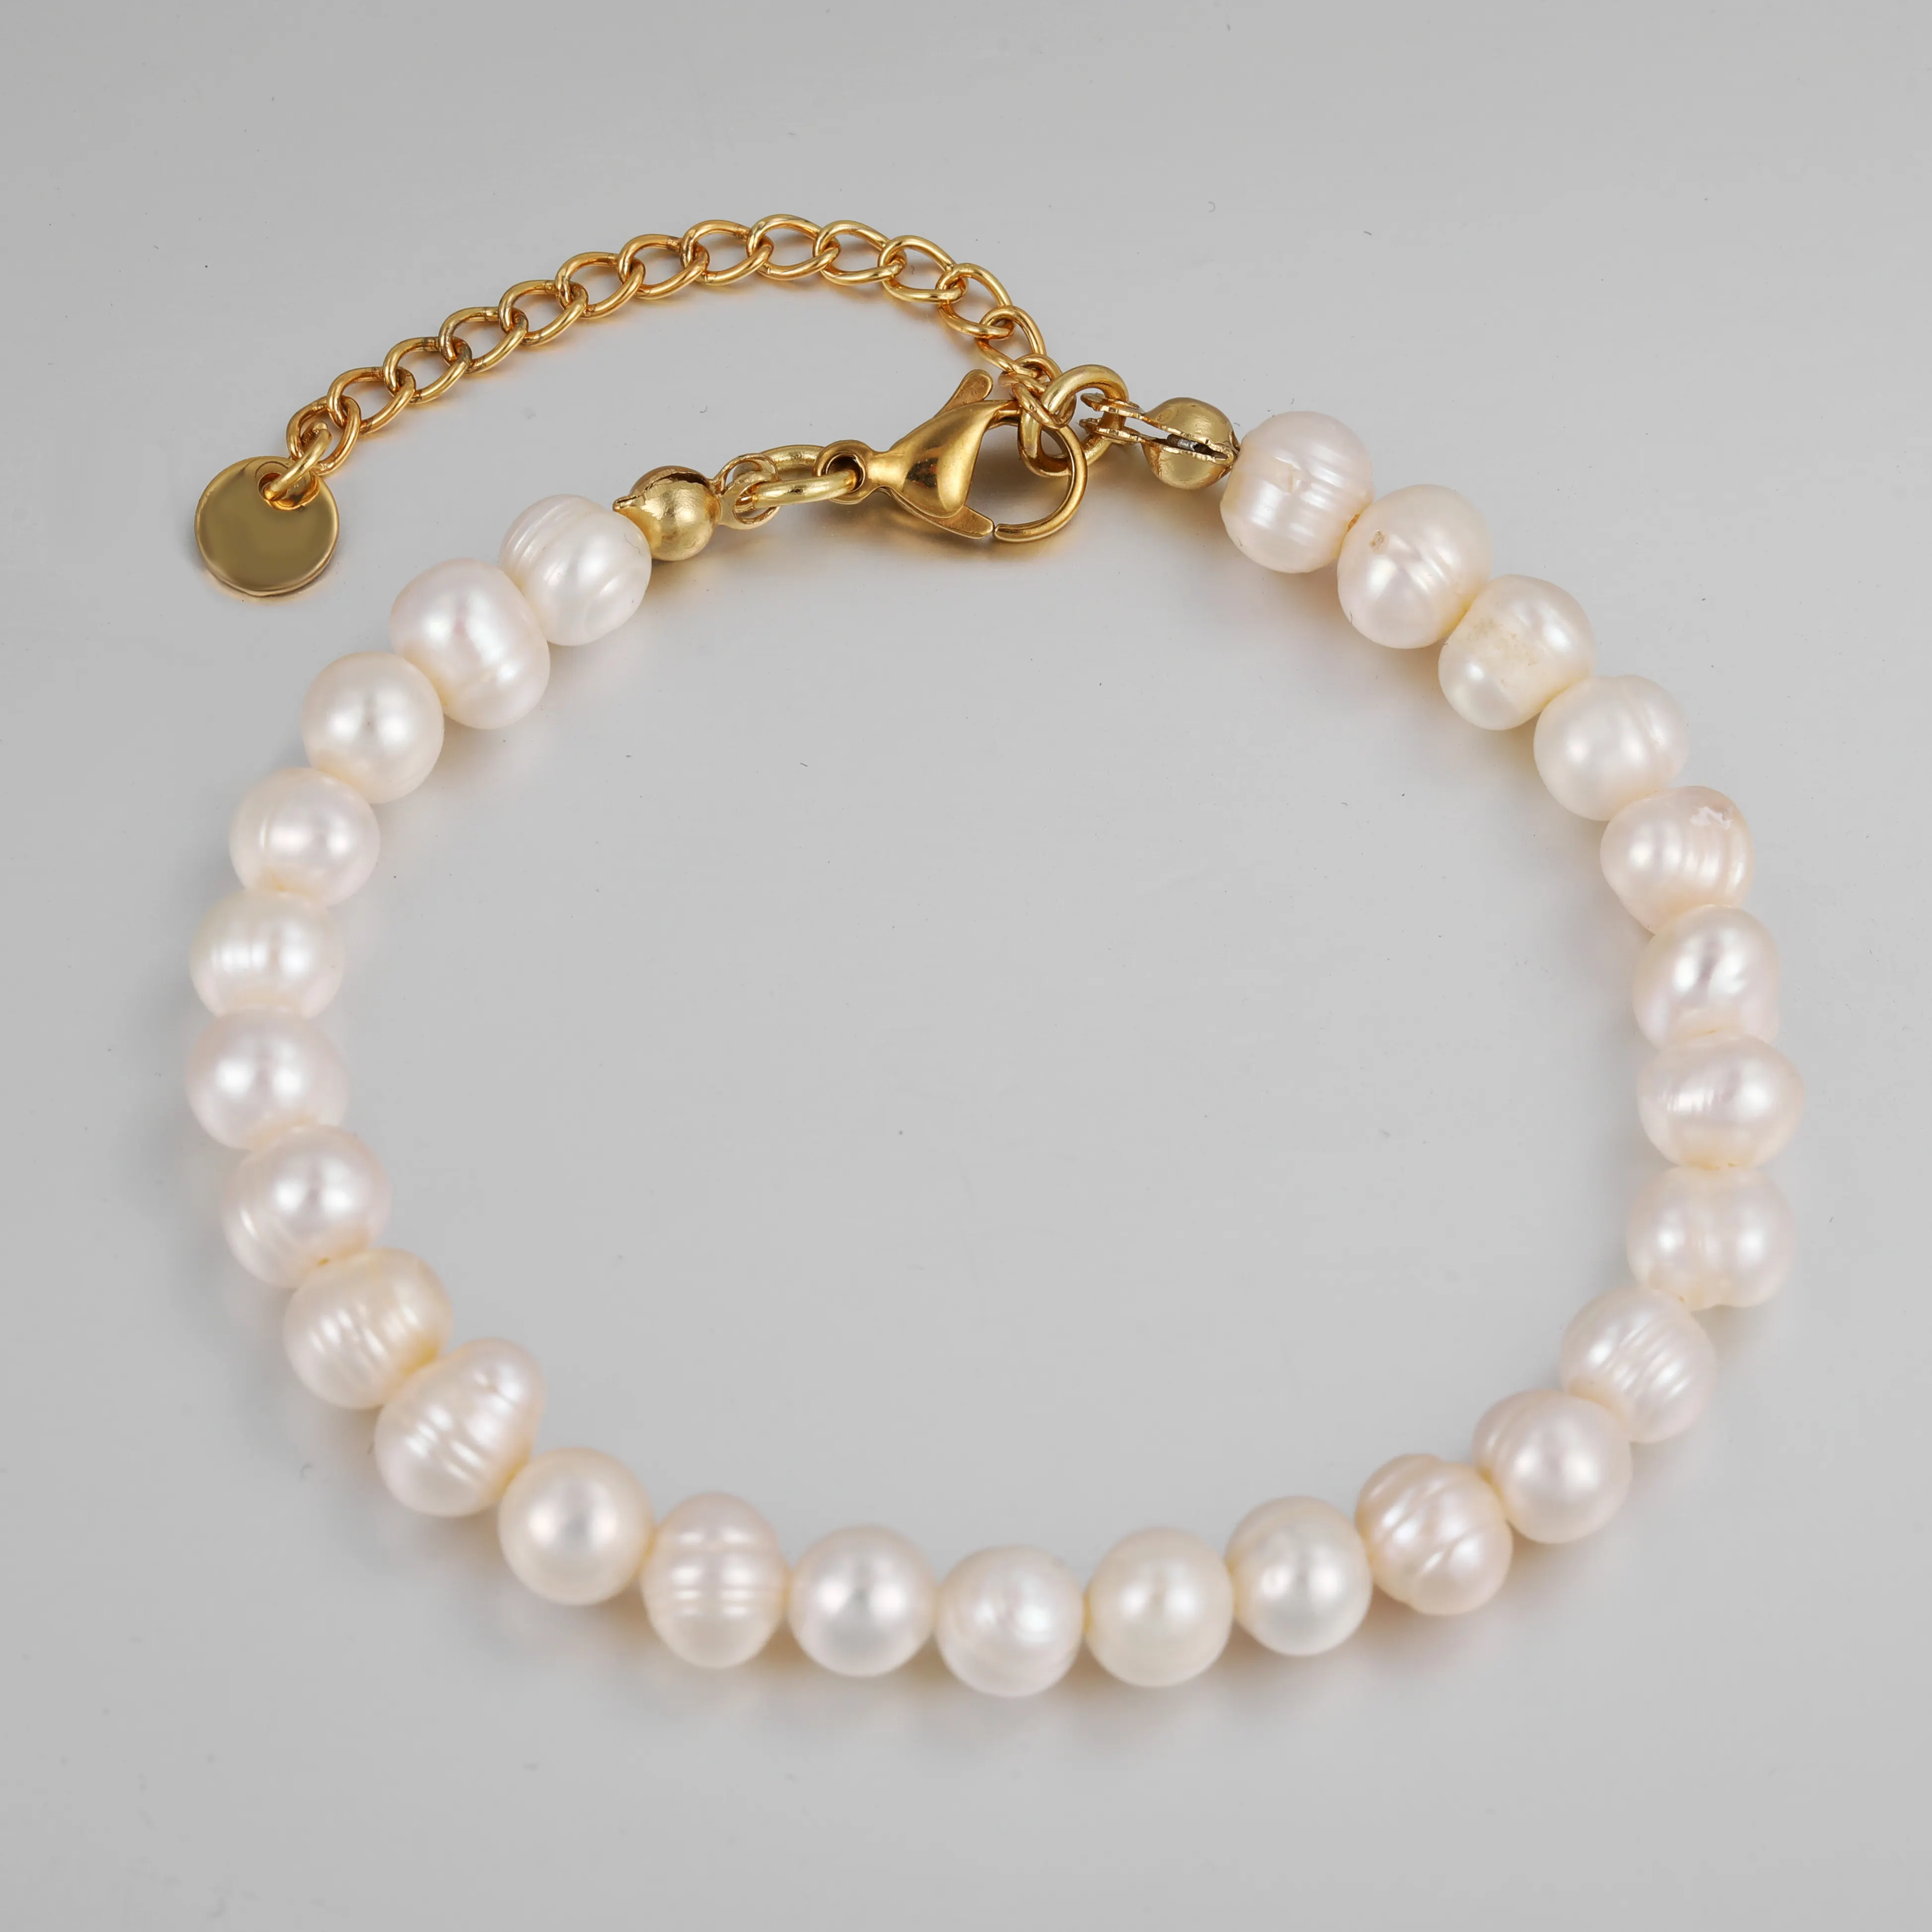 Süßwasser-Zuchtperlen armbänder Weiß Runde 18 Karat vergoldete Edelstahls chnalle Echtes Perlen armband für Frauen Mädchen